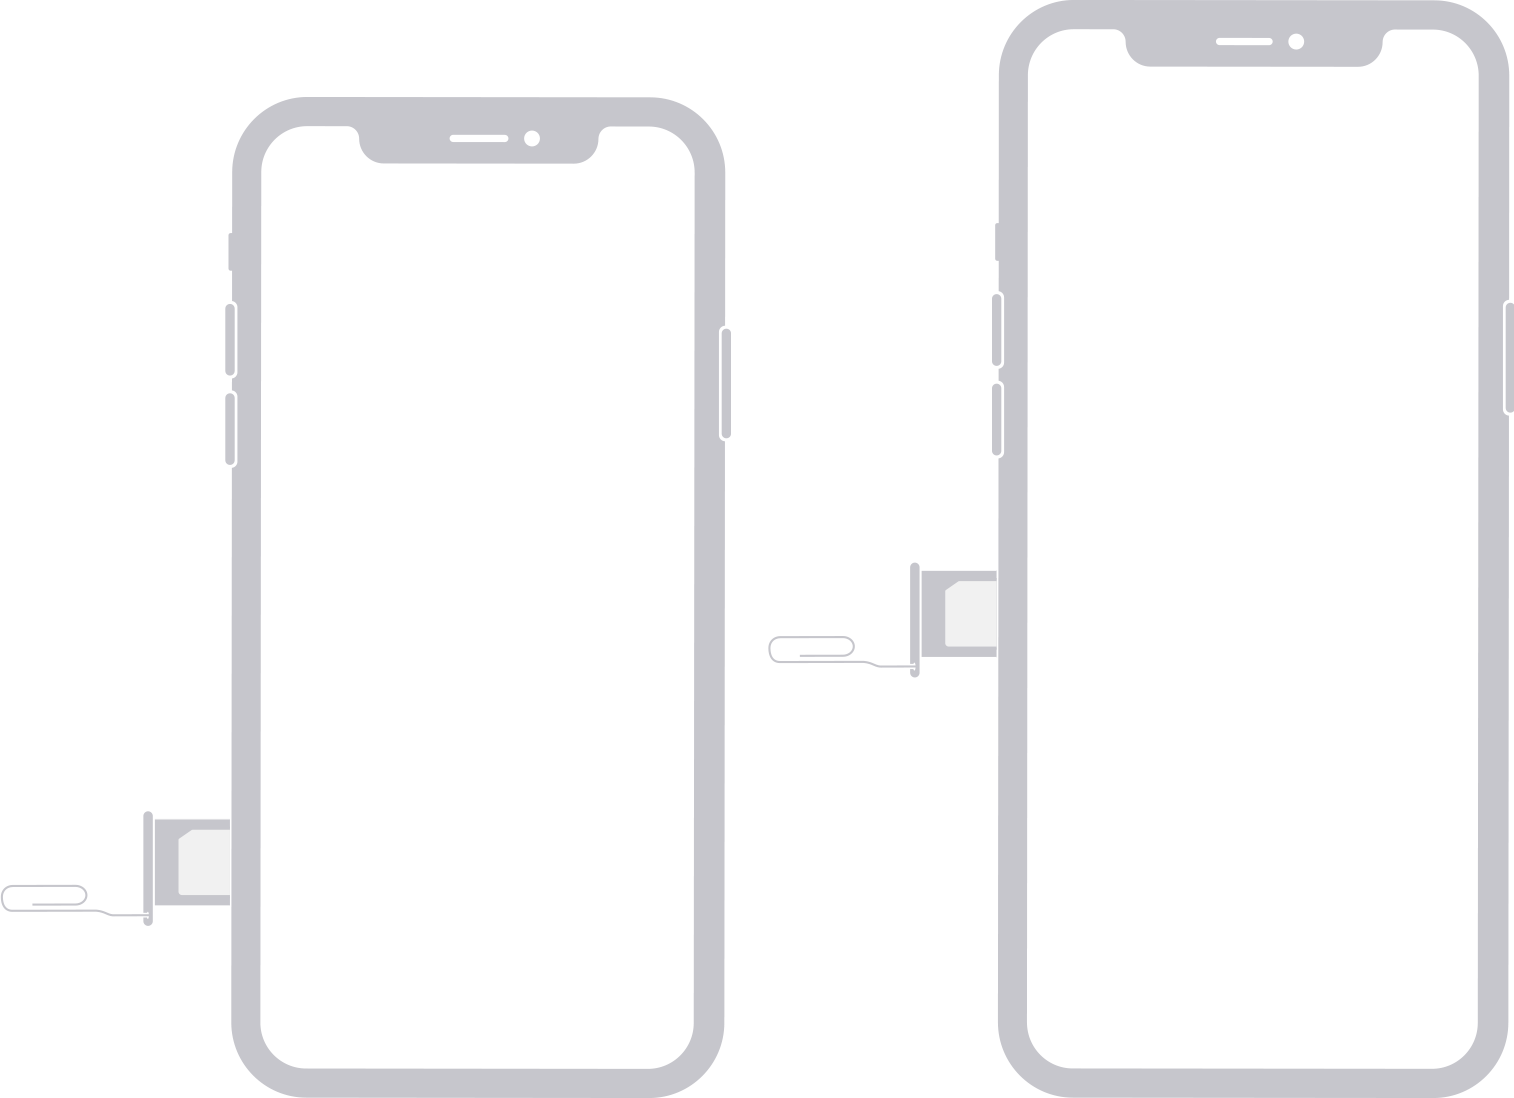 iPhone の左側面の SIM を写した画像